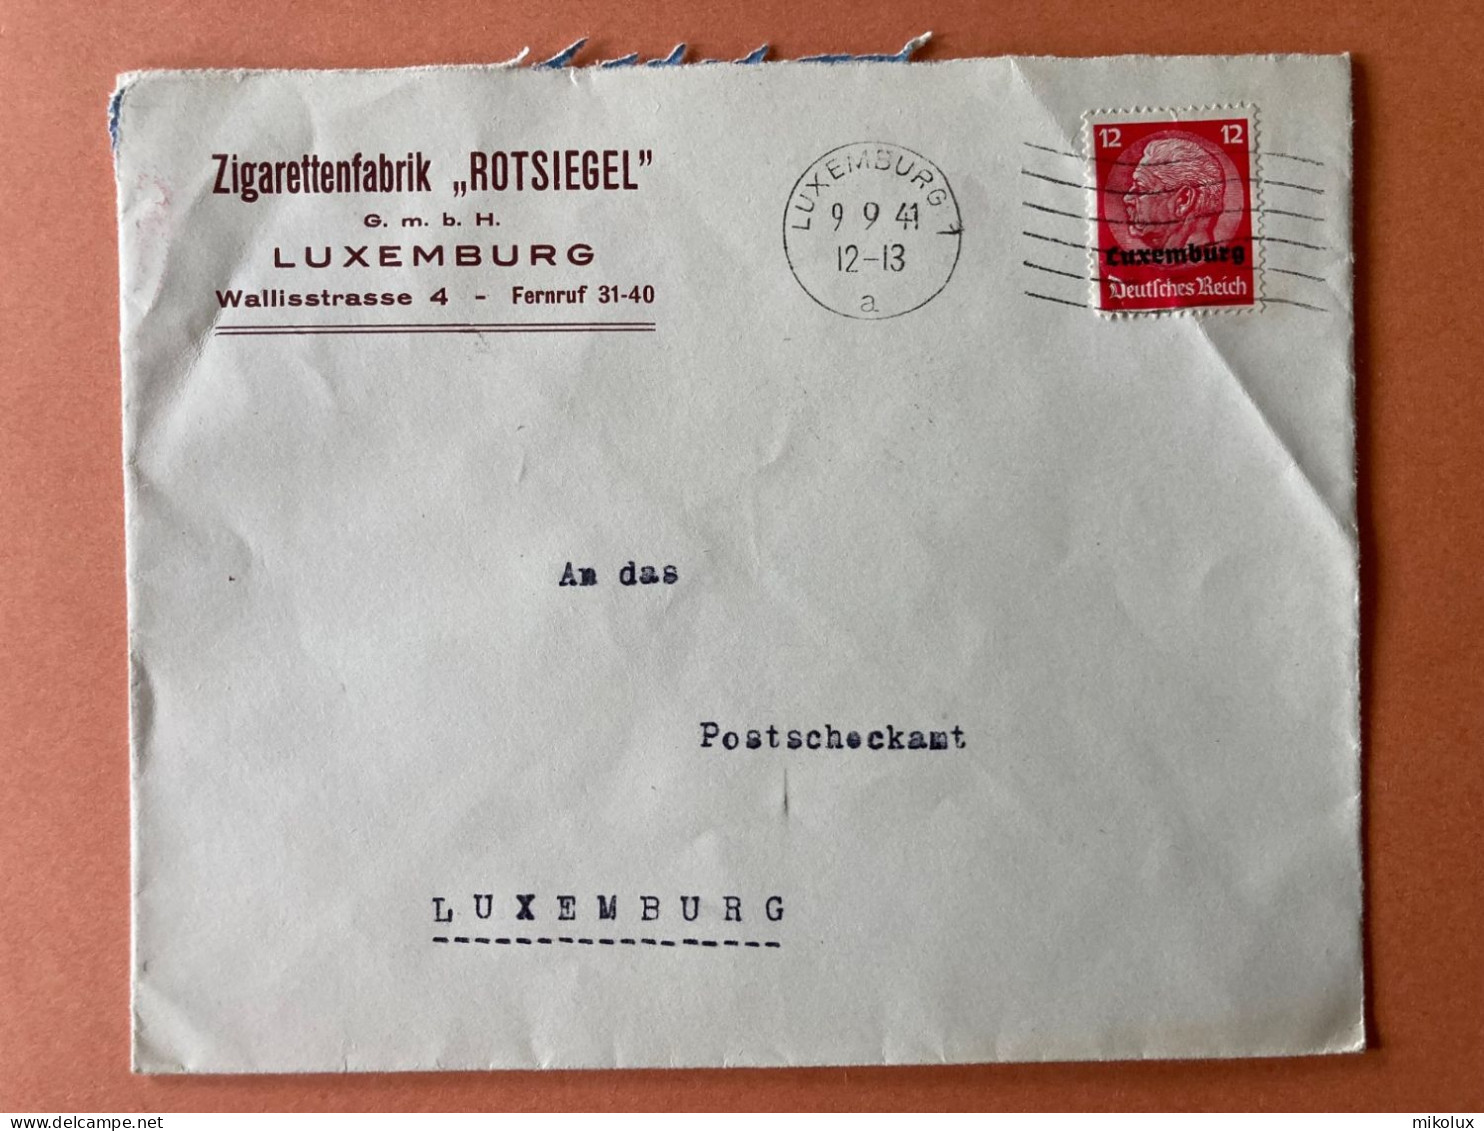 Luxemburg Zigarettenfabrik Rotsiegel   Briefumschlag 1941 - 1940-1944 Deutsche Besatzung